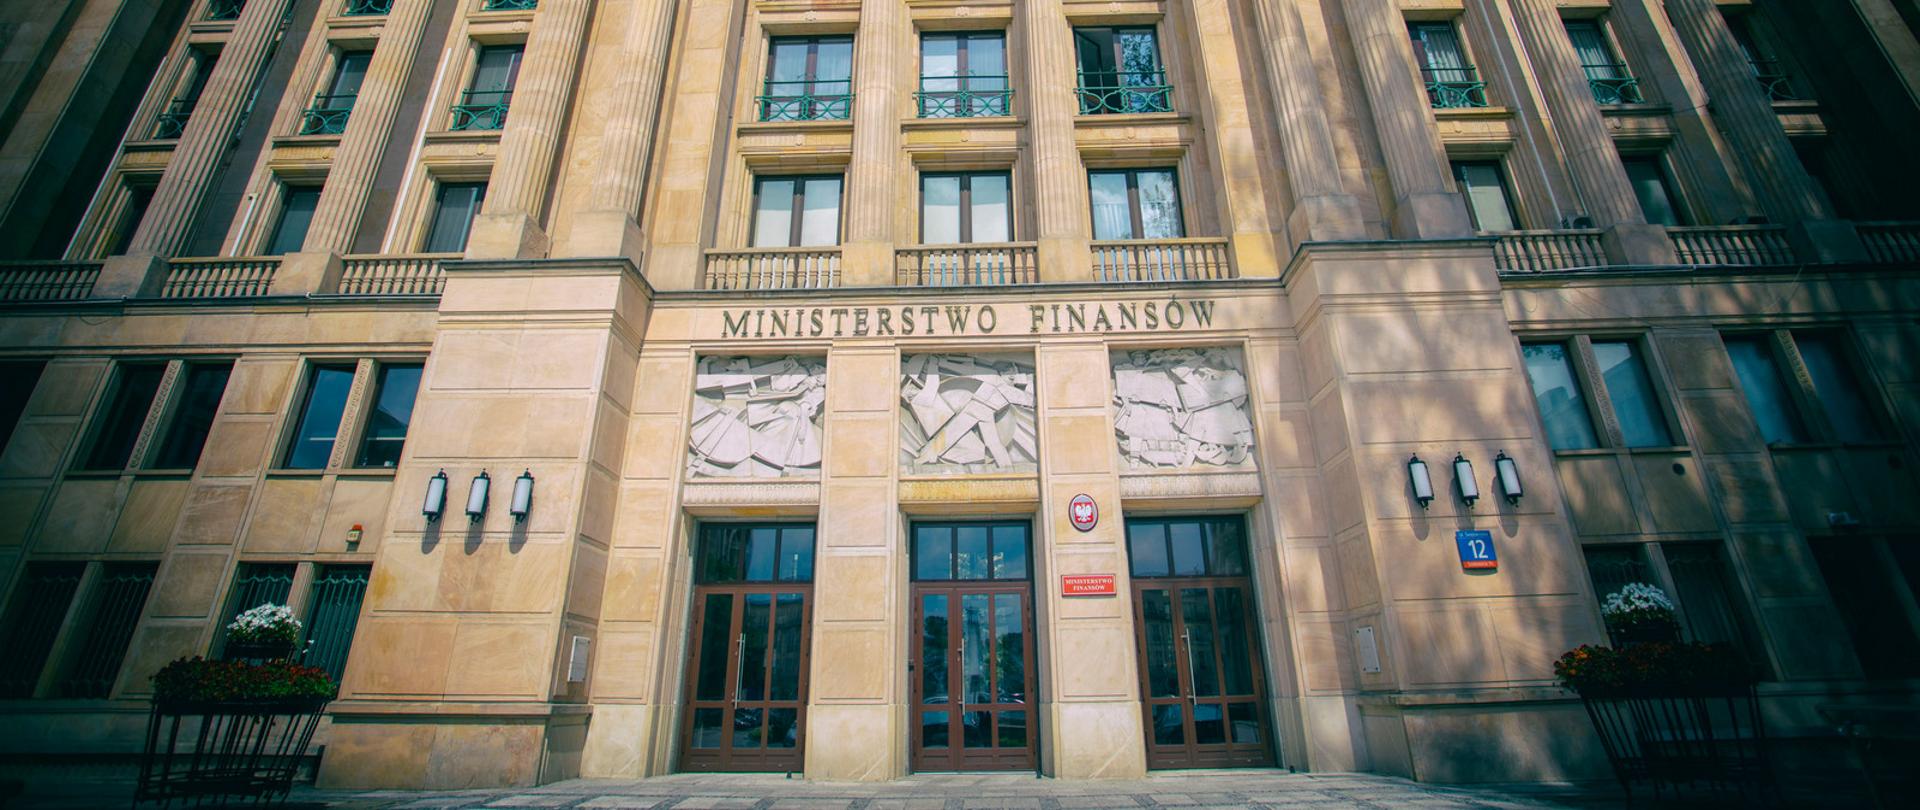 Ściana frontowa wejścia głównego do Ministerstwa Finansów.